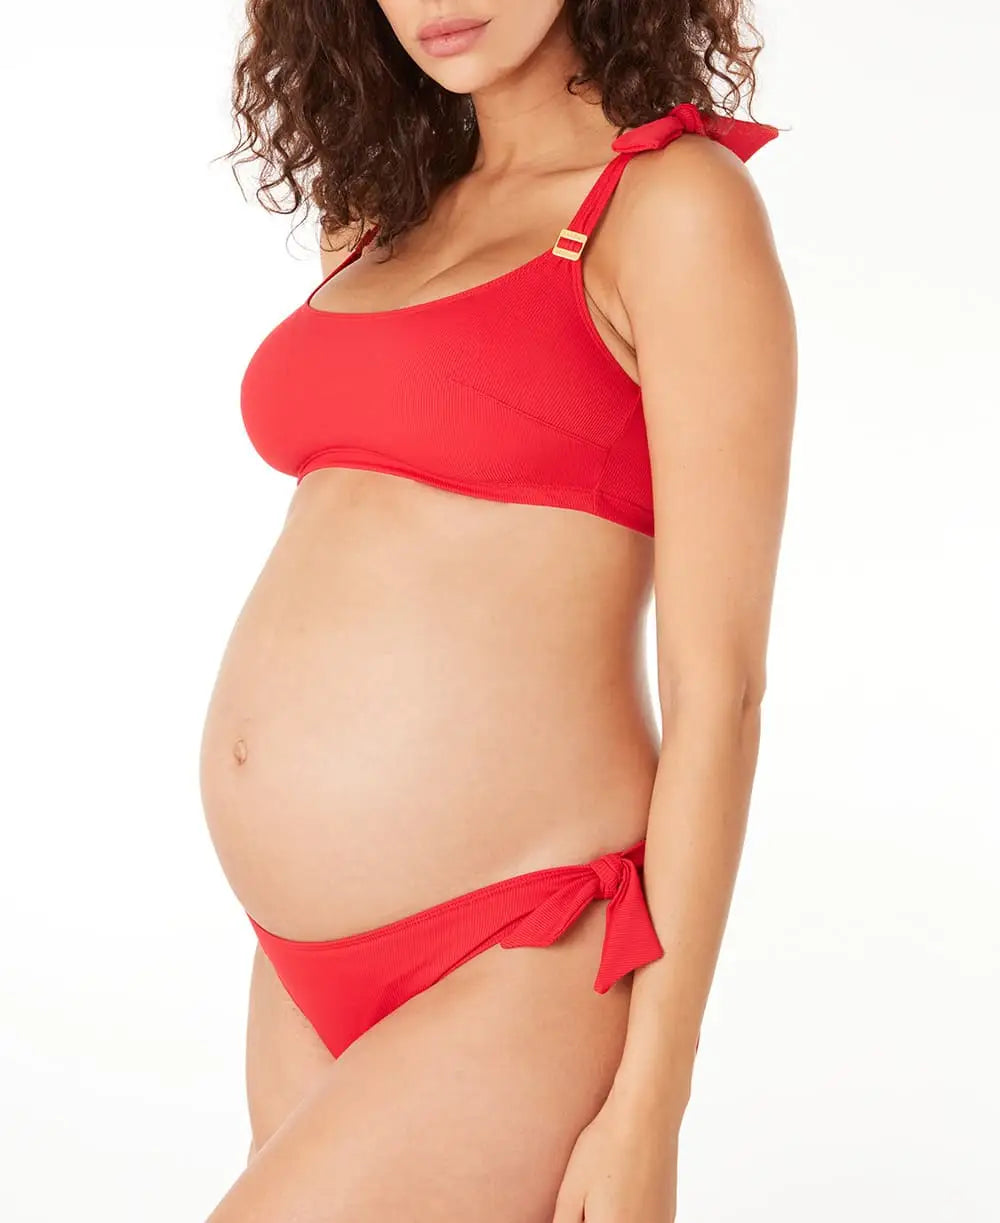 Maternity bikini Porto Vecchio red - Bikini